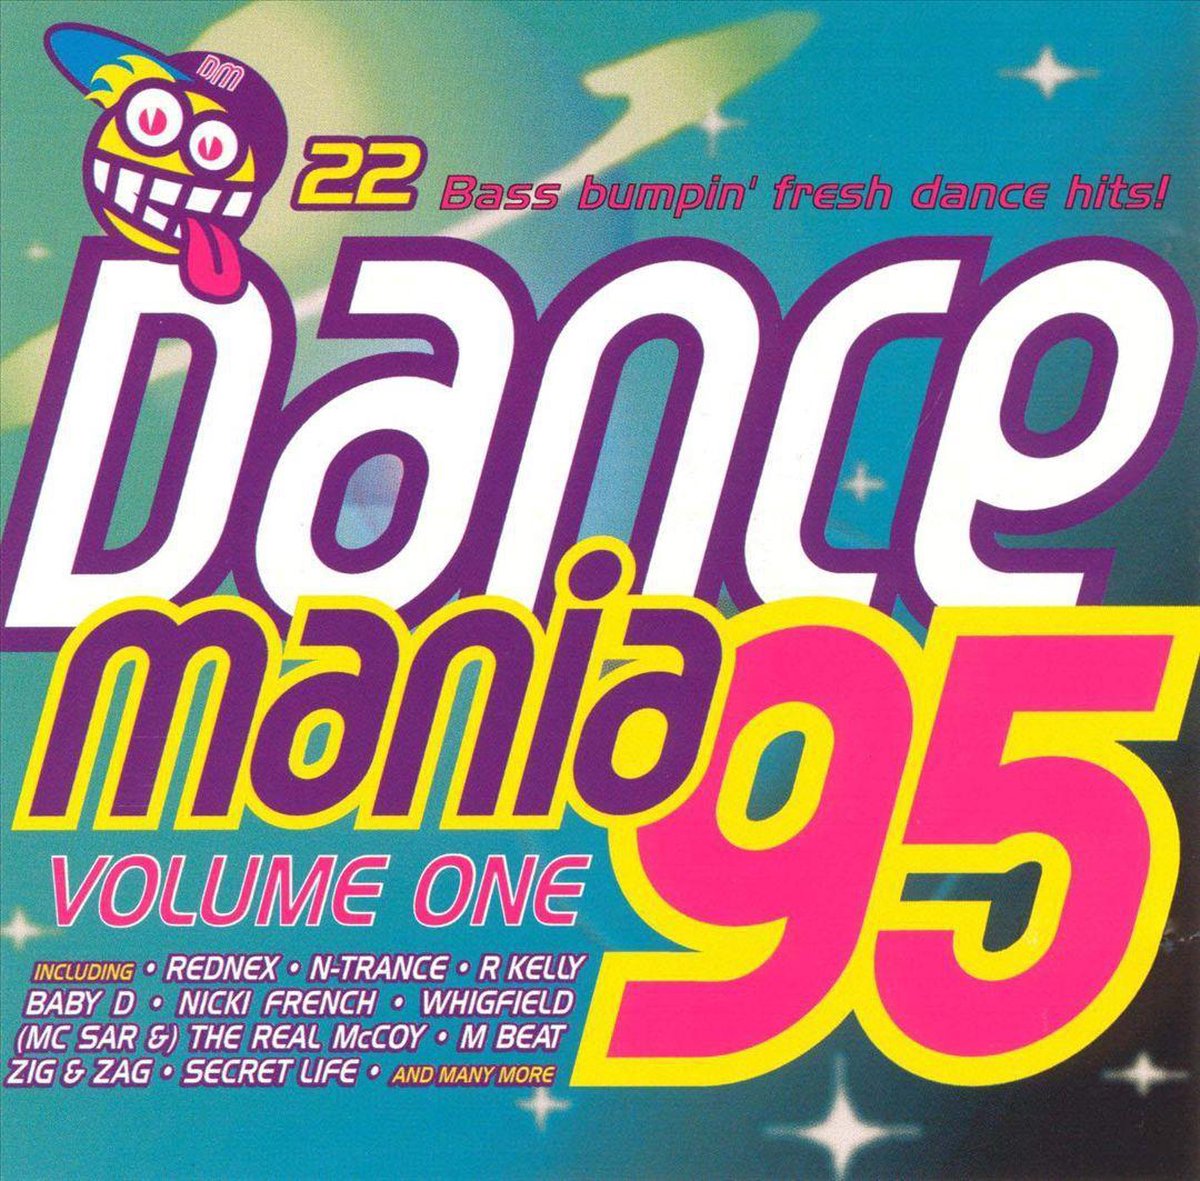 Dance Mania '95 - various artists